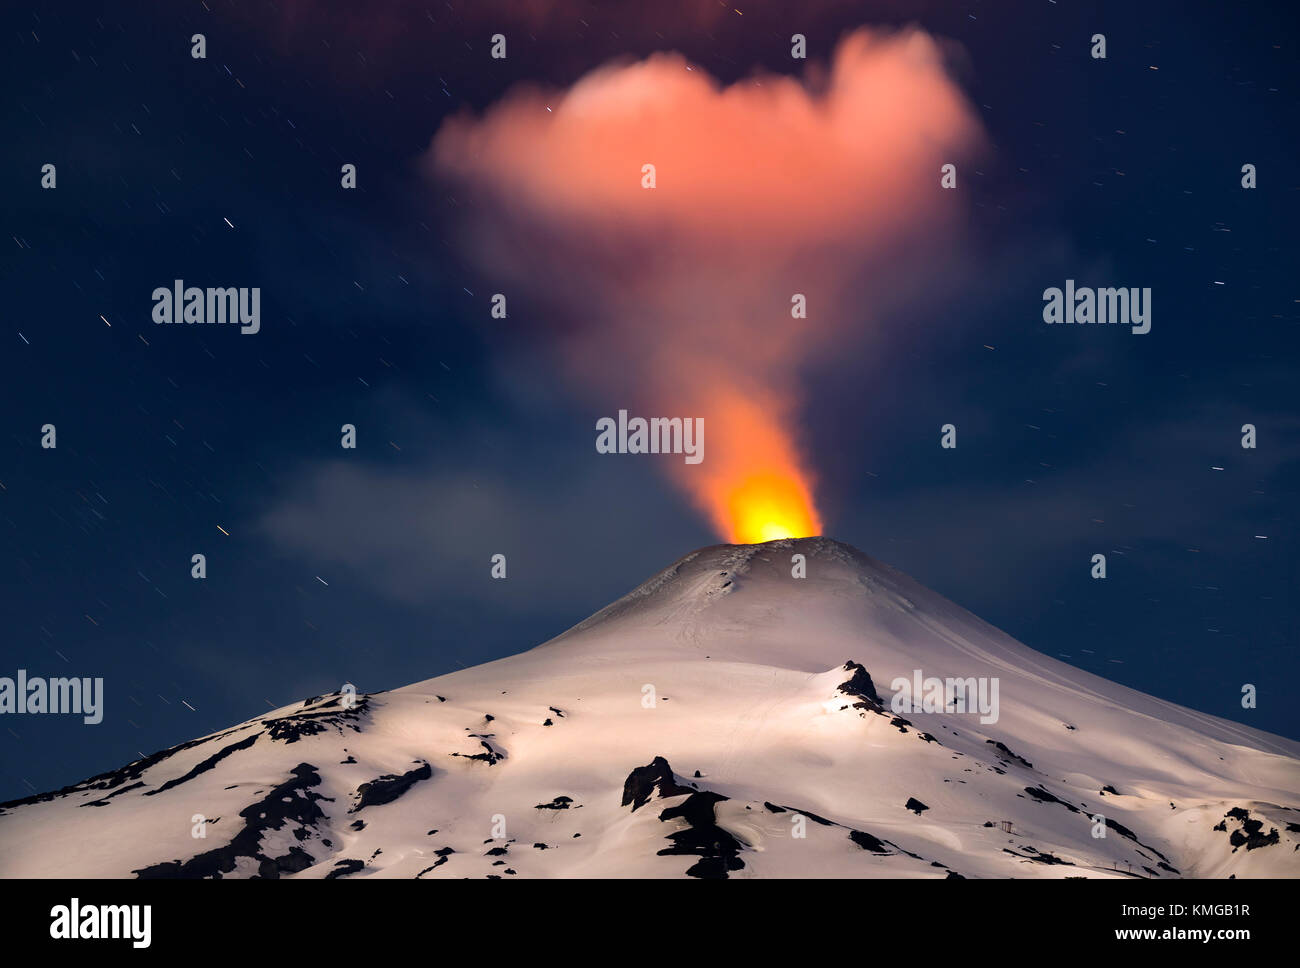 Volcán Villarrica / volcan Villarrica. El volcán Villarrica es uno de los volcanes más peligrosos de Chile, se encuentra en la región de la Araucania. Banque D'Images